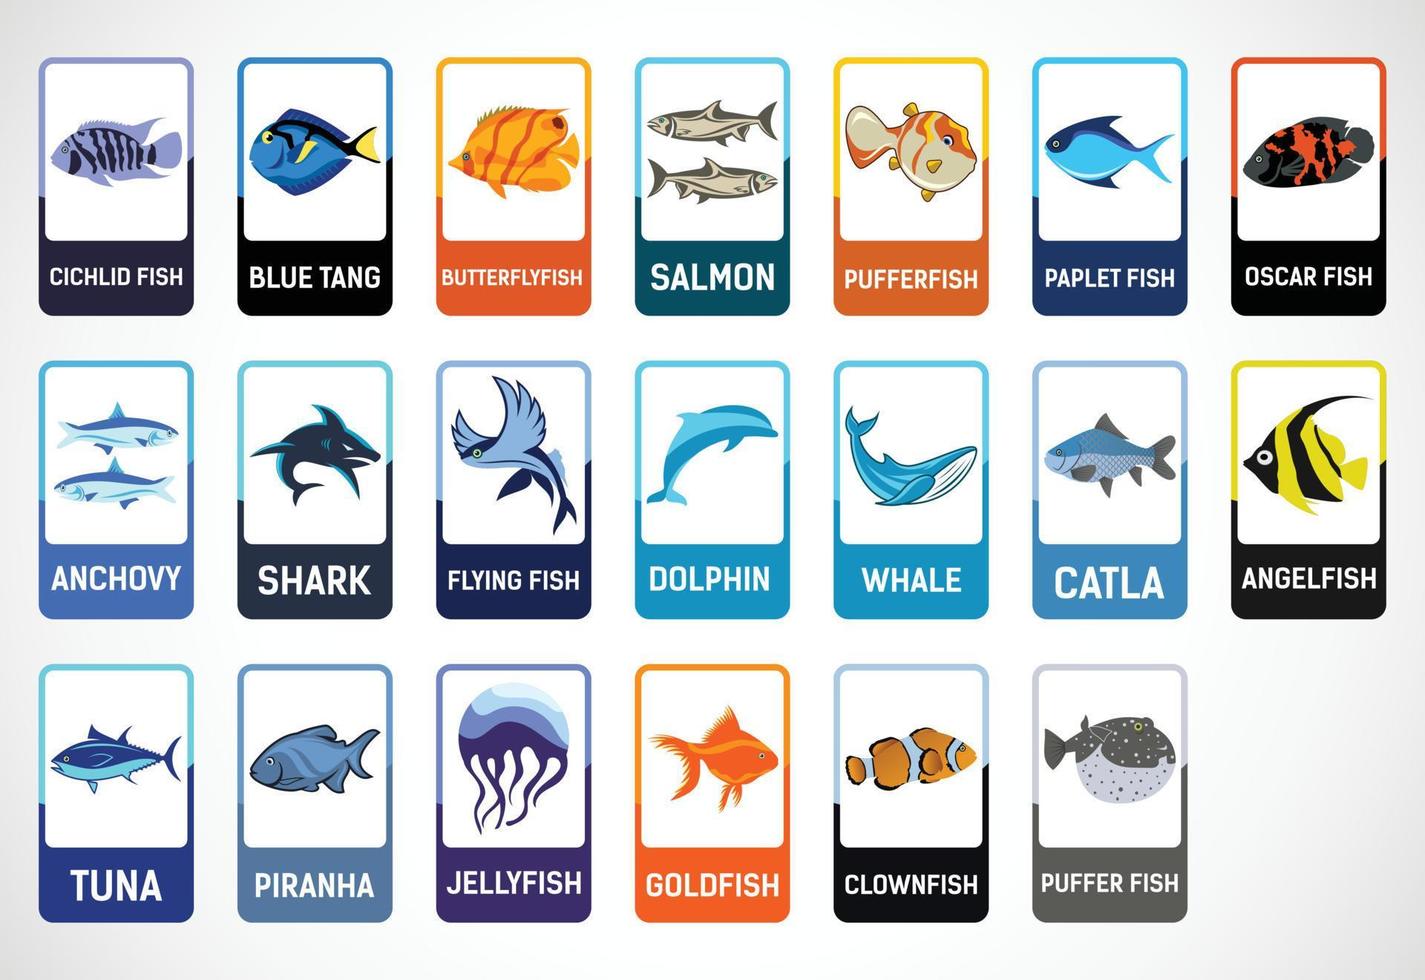 flashcards de poisson pour les enfants. cartes éducatives pour le préscolaire. illustration vectorielle imprimable vecteur